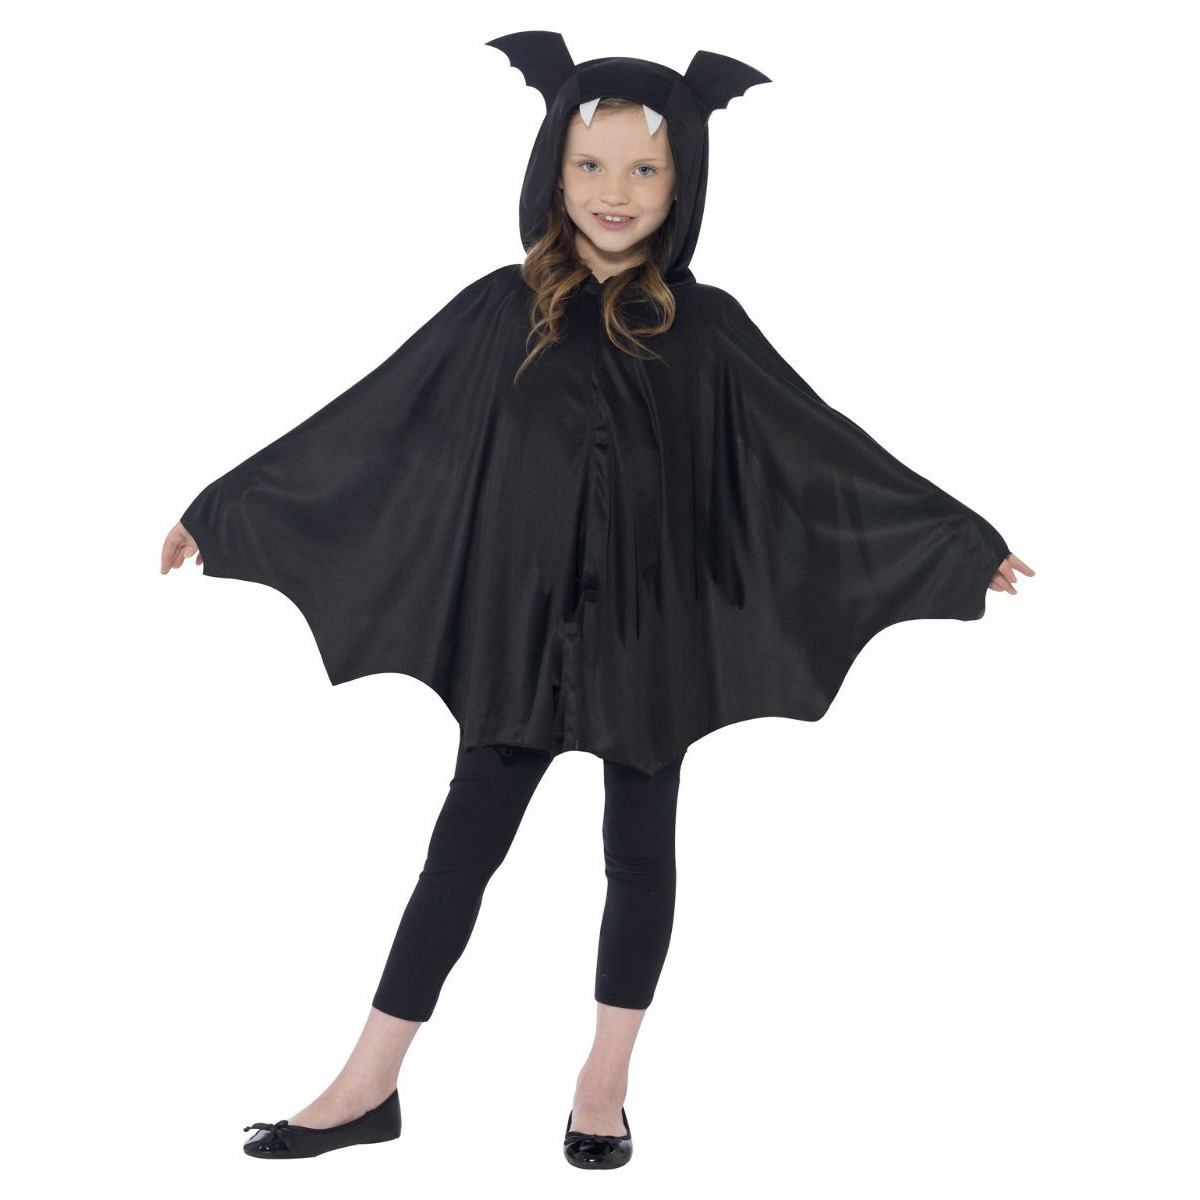 Vleermuis verkleed kostuum/cape voor kinderen